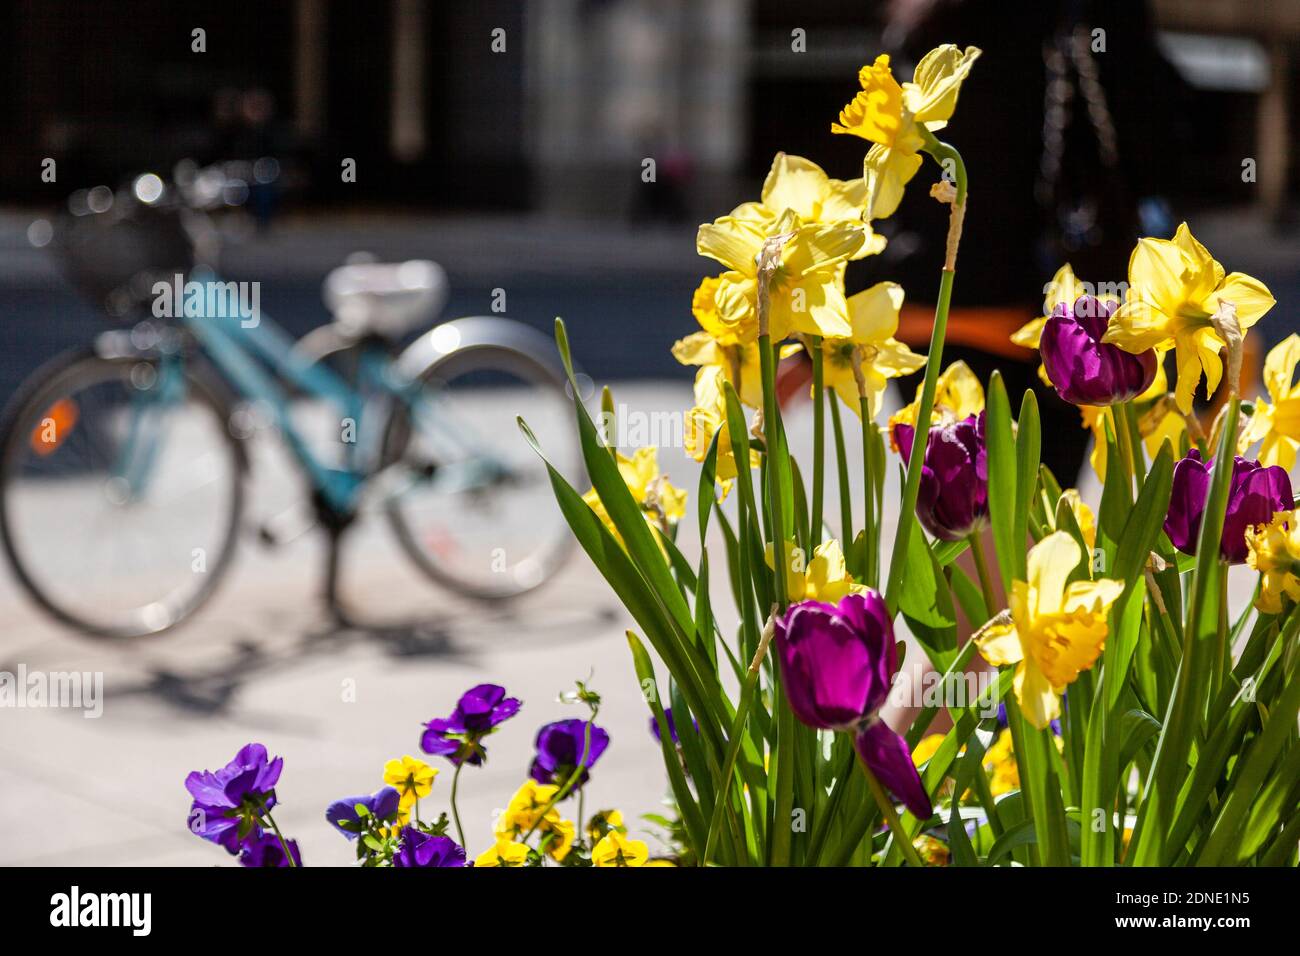 Escena de la ciudad con flores en una sembradora con una bicicleta estacionada en el fondo. Foto de stock